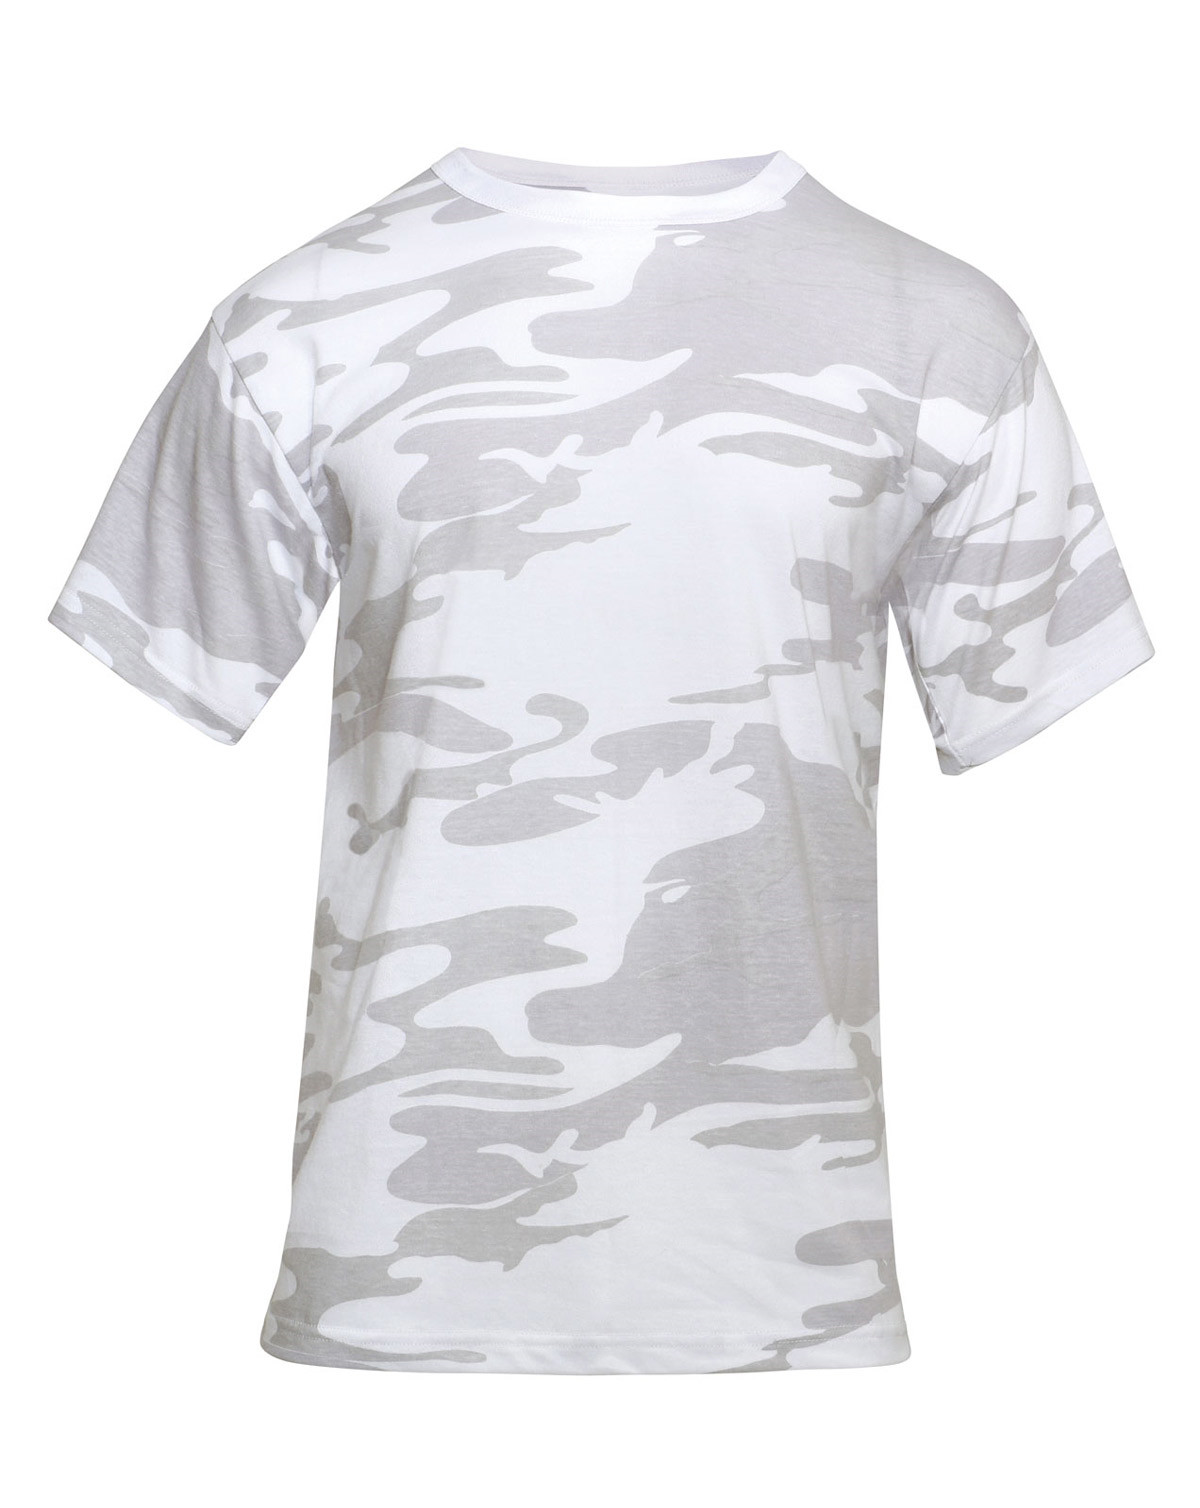 Rothco T-shirt - Mange Camouflager (Grå / Hvid, S)